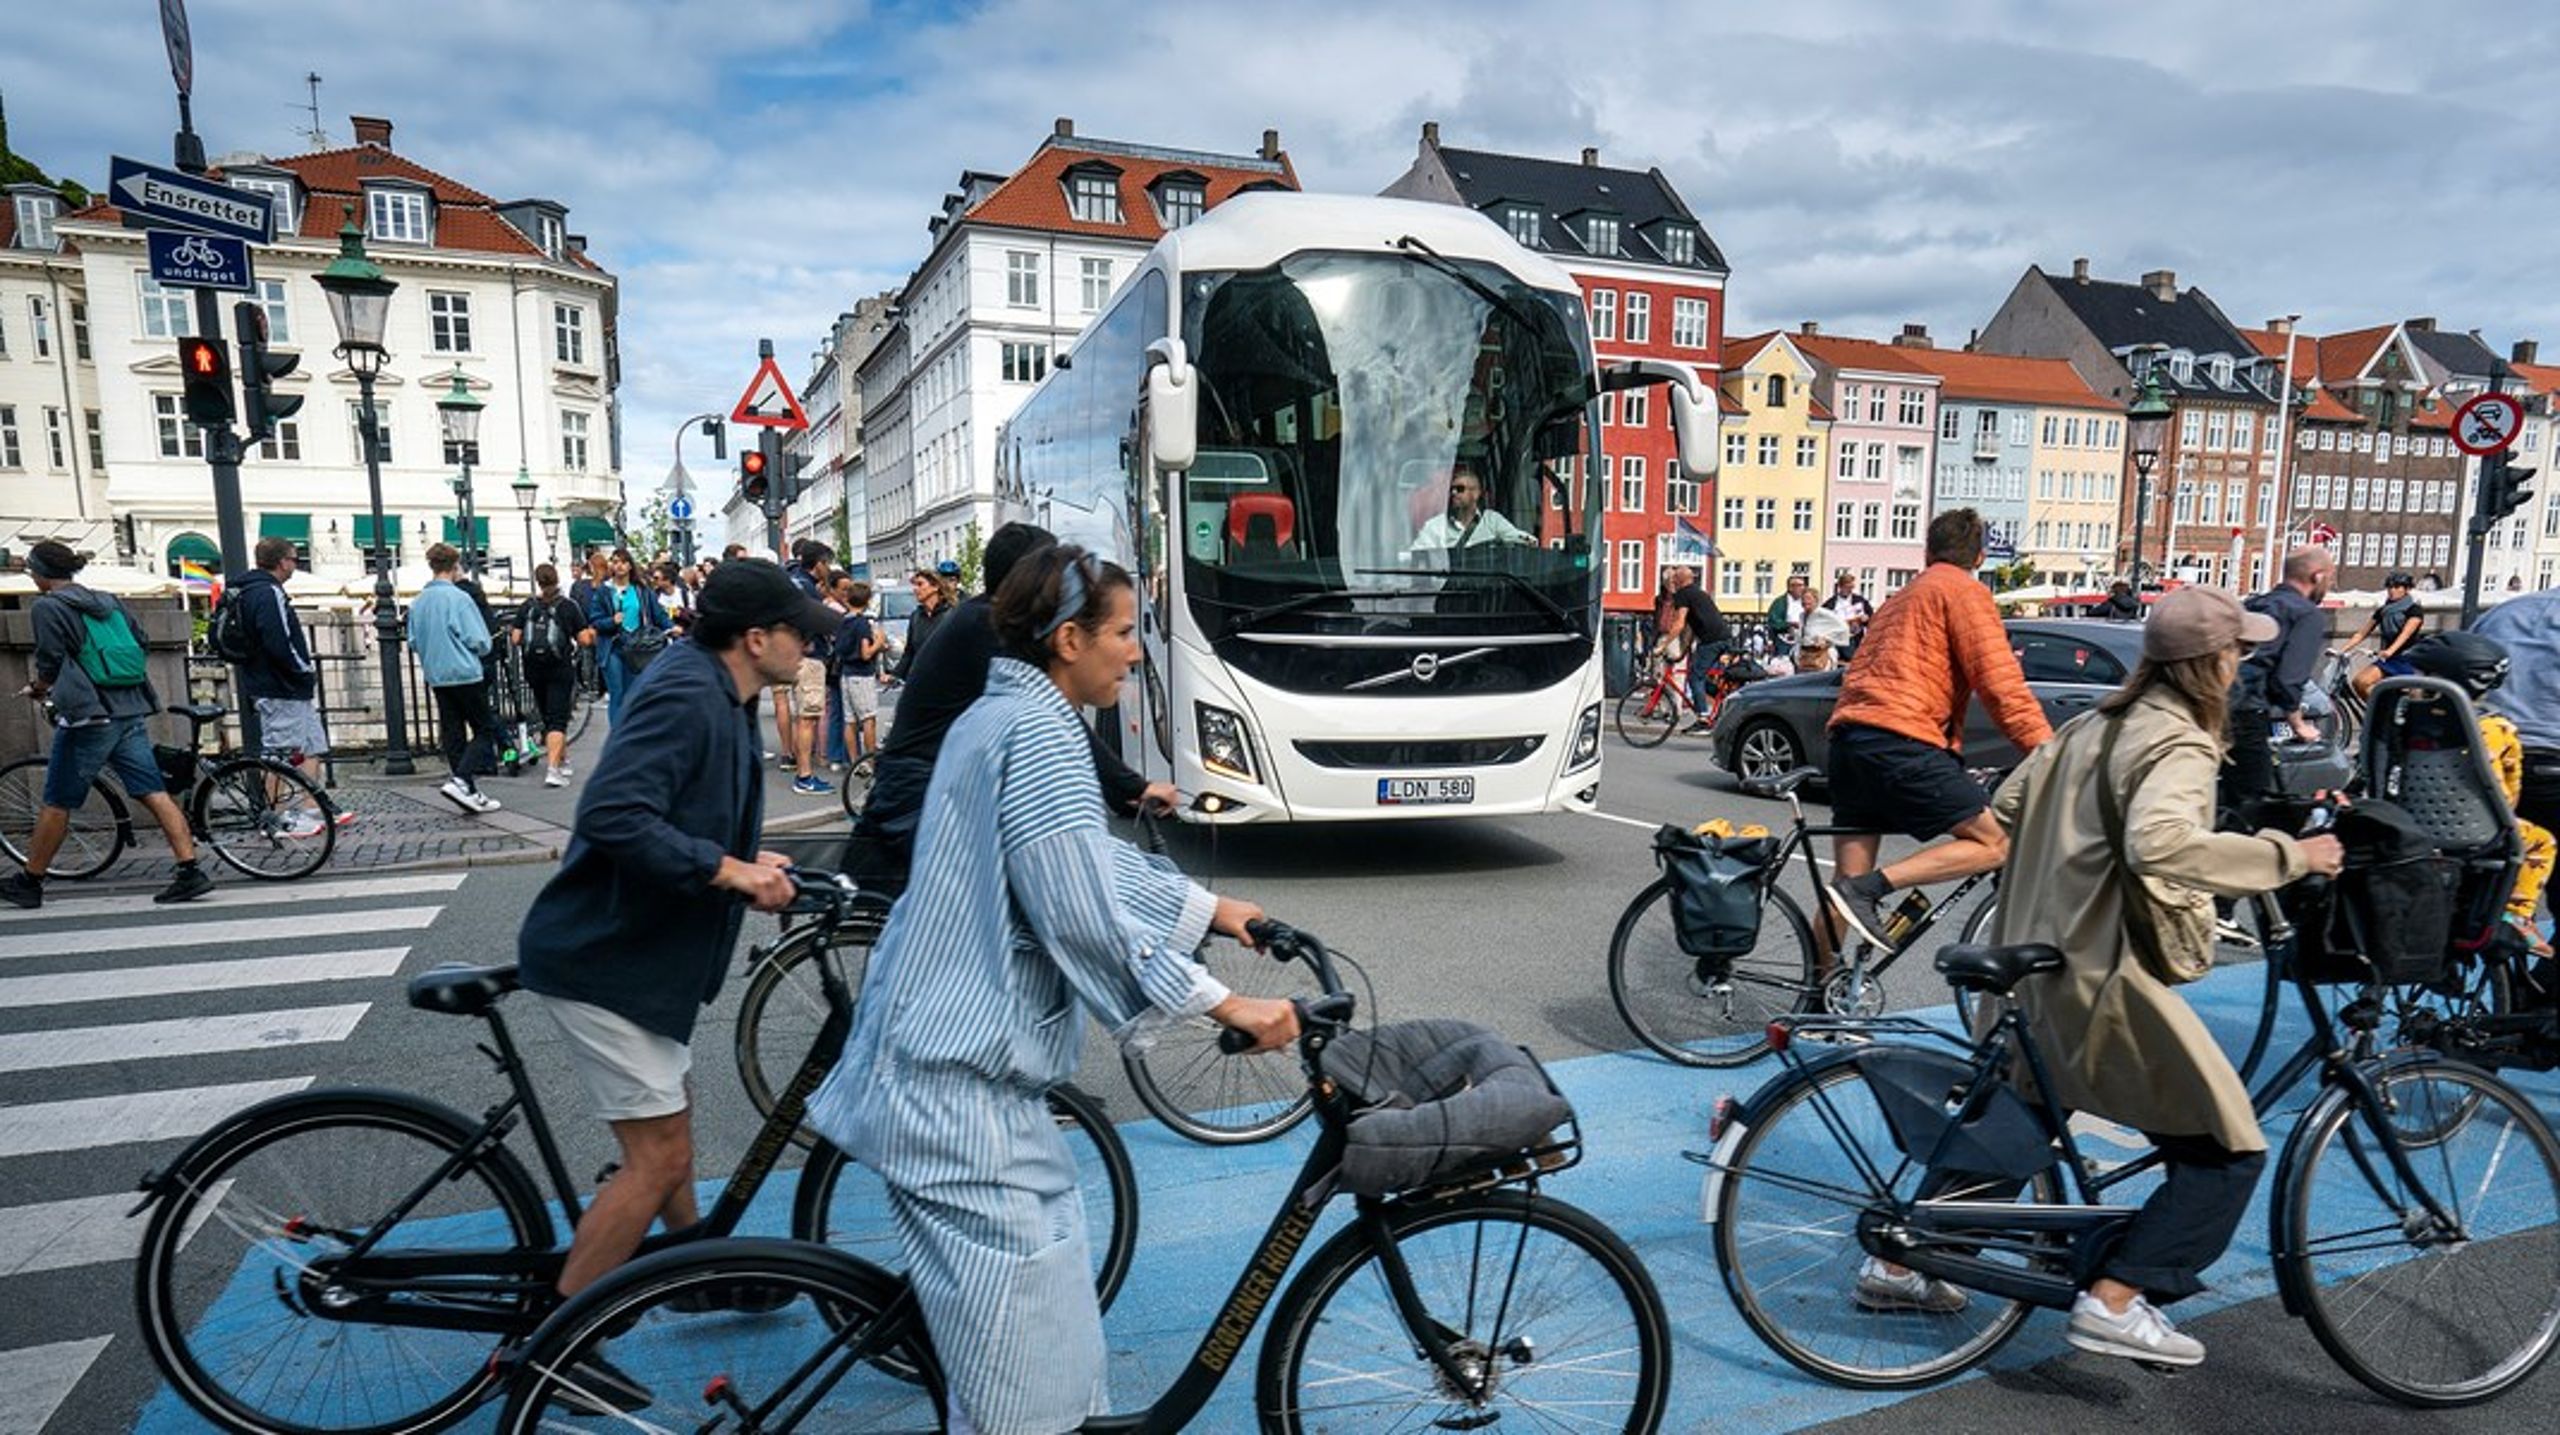 Borgerrepræsentationen vil tage stilling til en handlingsplan, der begrænser antallet af turistbusser i Indre By.